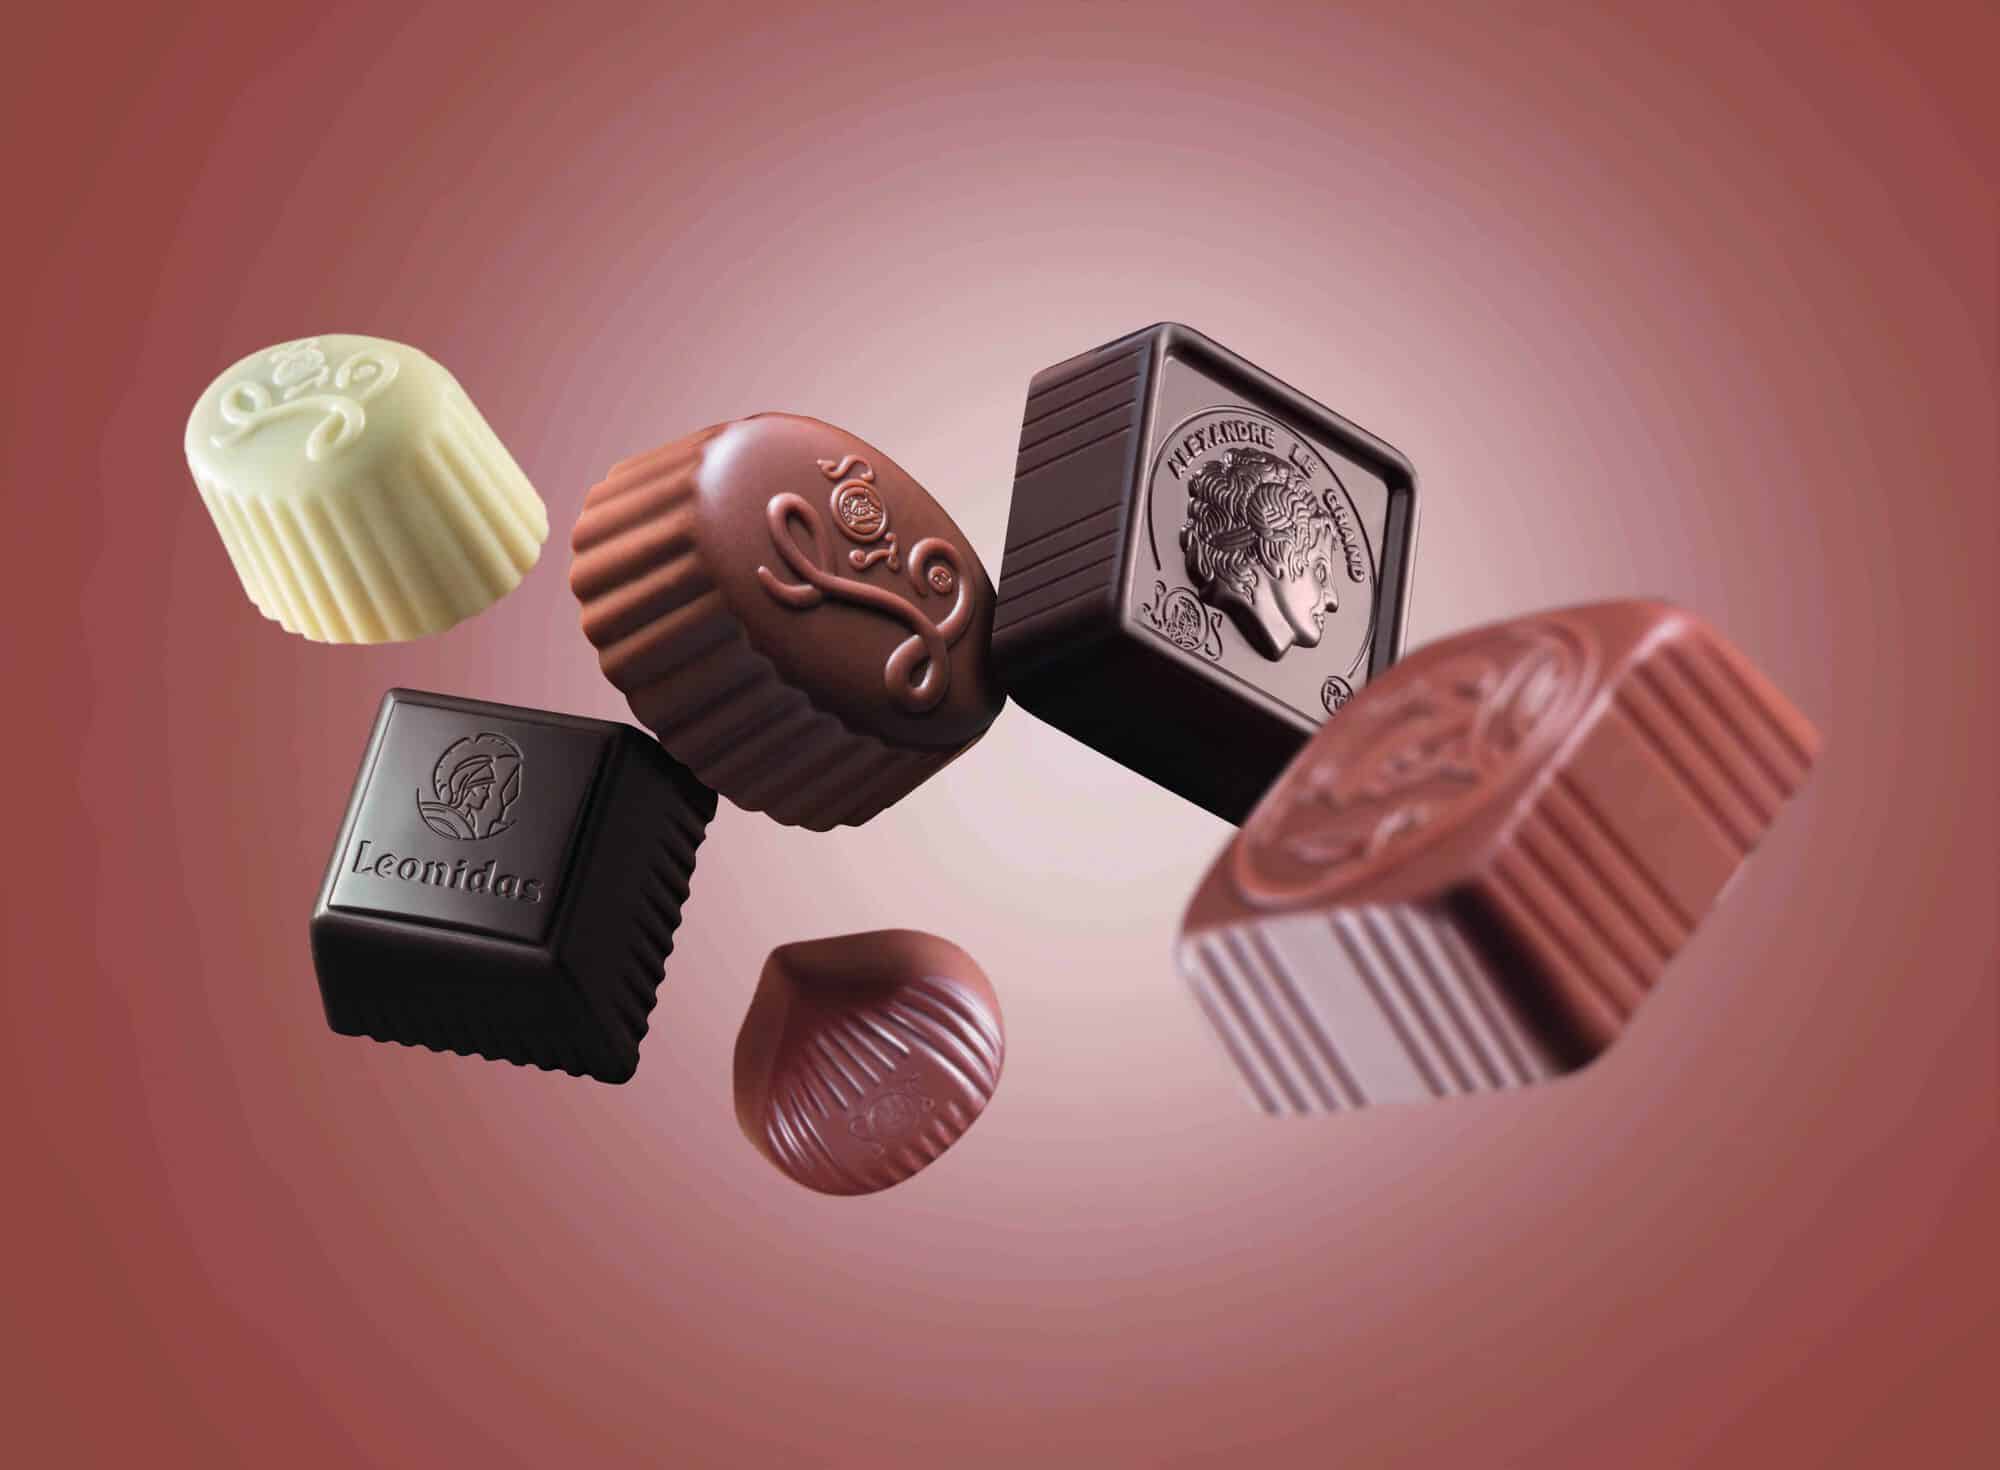 Découvrez le chocolat belge praliné à Lyon – Chocolats Leonidas Lyon